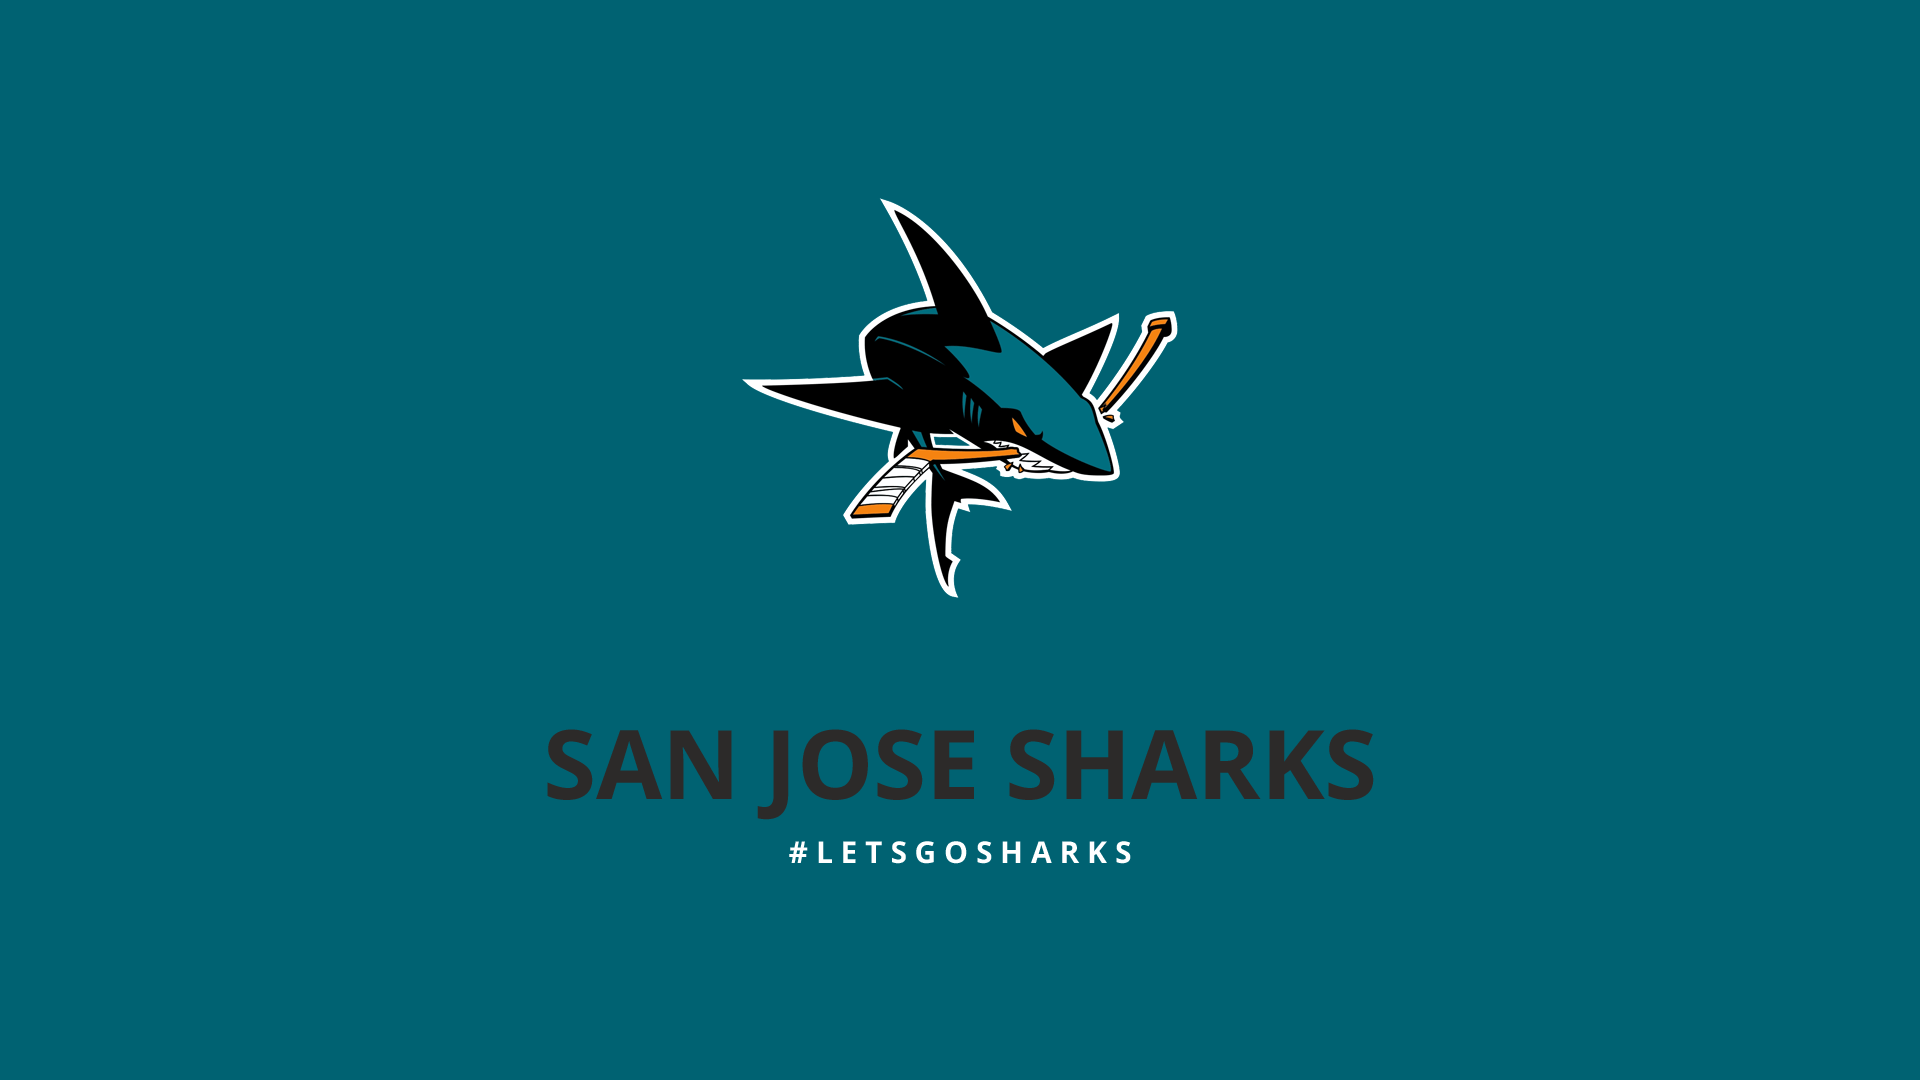 Minimalist San Jose Sharks wallpaper